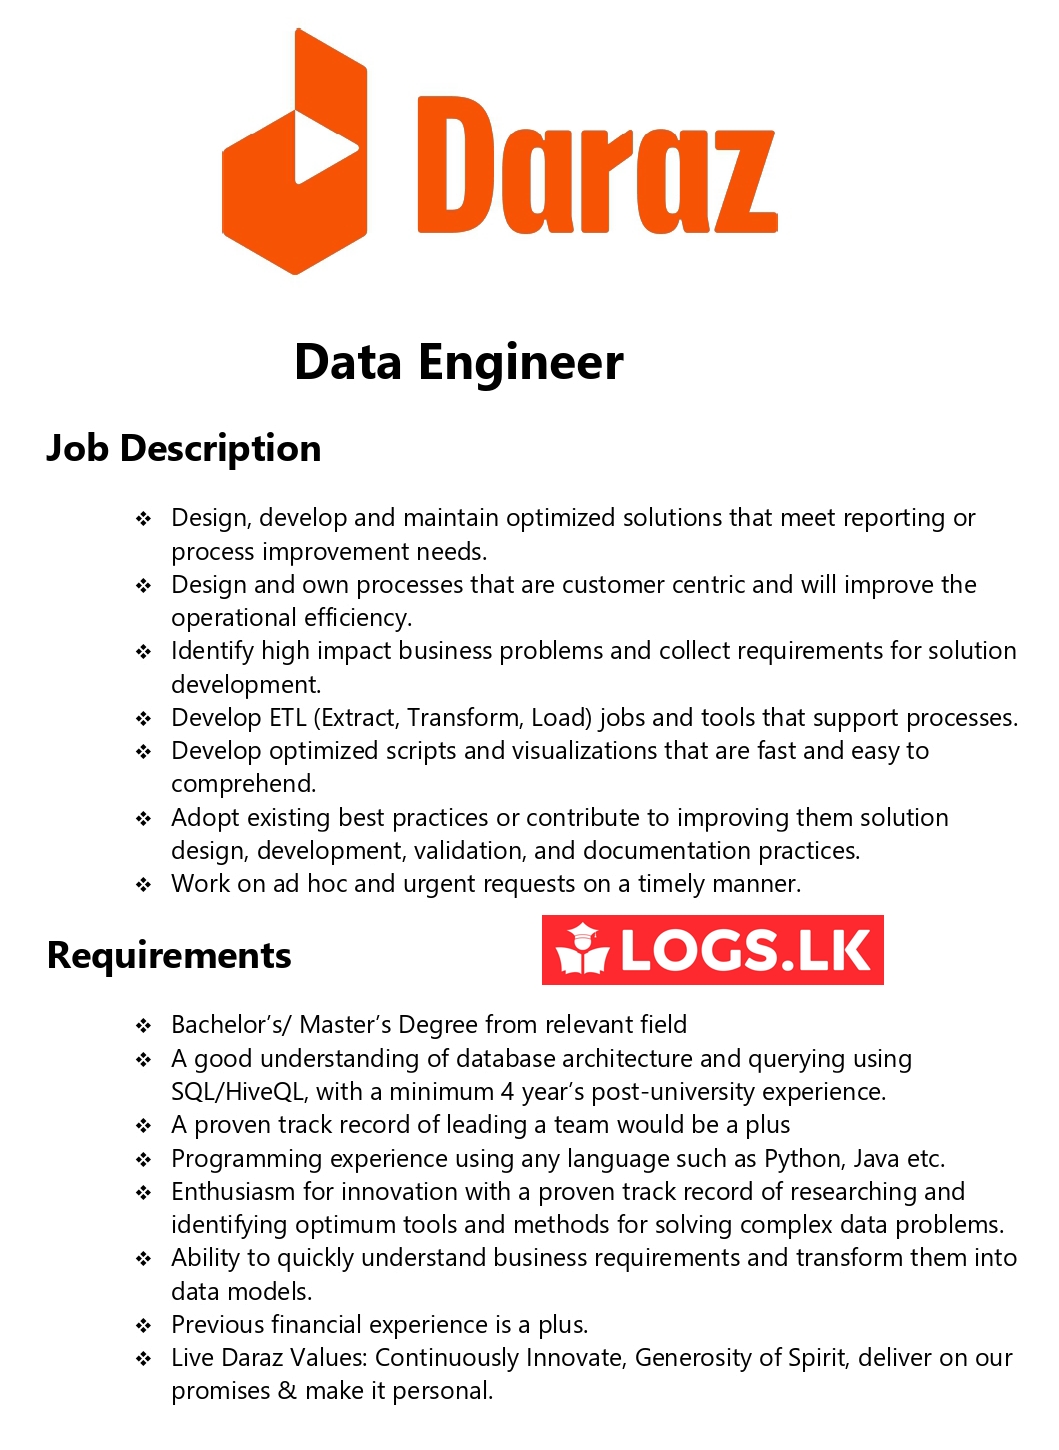 Data Engineer Job Vacancy - Daraz Sri Lanka Jobs Vacancies Details